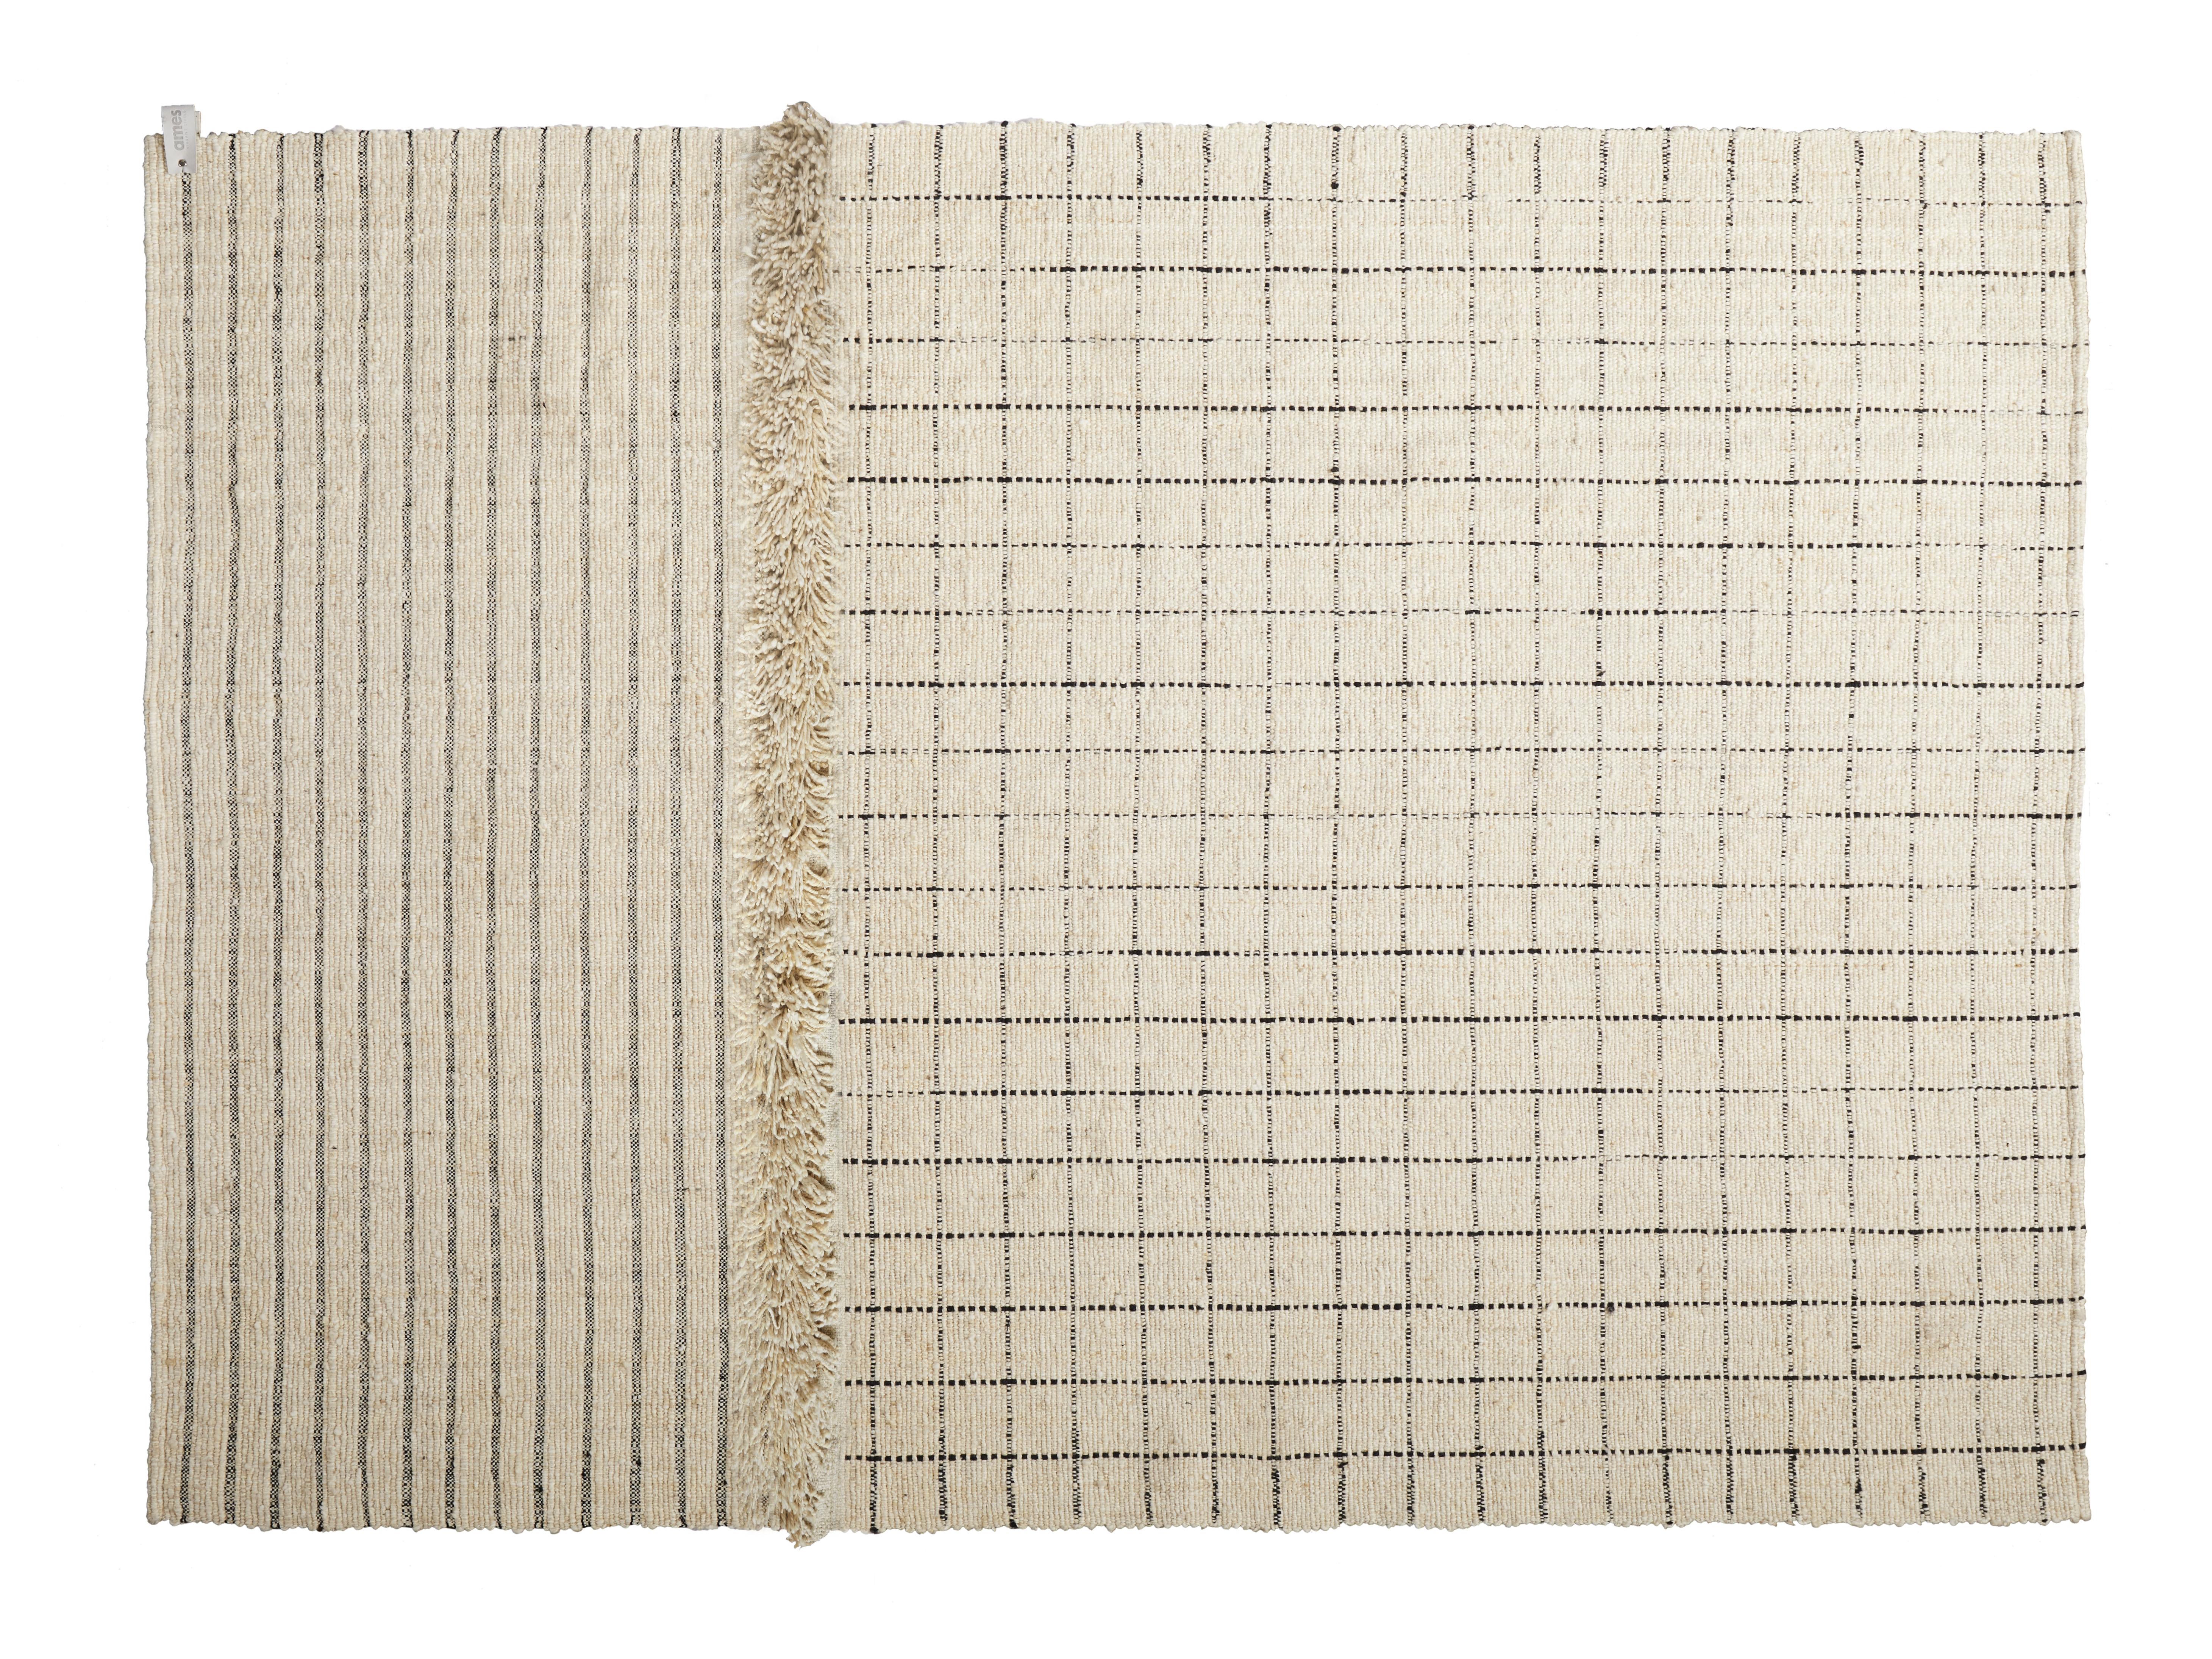 Karo großer Subas-Teppich von Sebastian Herkner
MATERIALIEN: 100% natürliche Schurwolle. 
Technik: Natürlich gefärbte Fasern. Handgewebt in Kolumbien.
Abmessungen: B 310 x L 420 cm 
Erhältlich in den Farben: Karo, linea 1, linea 2, moton,